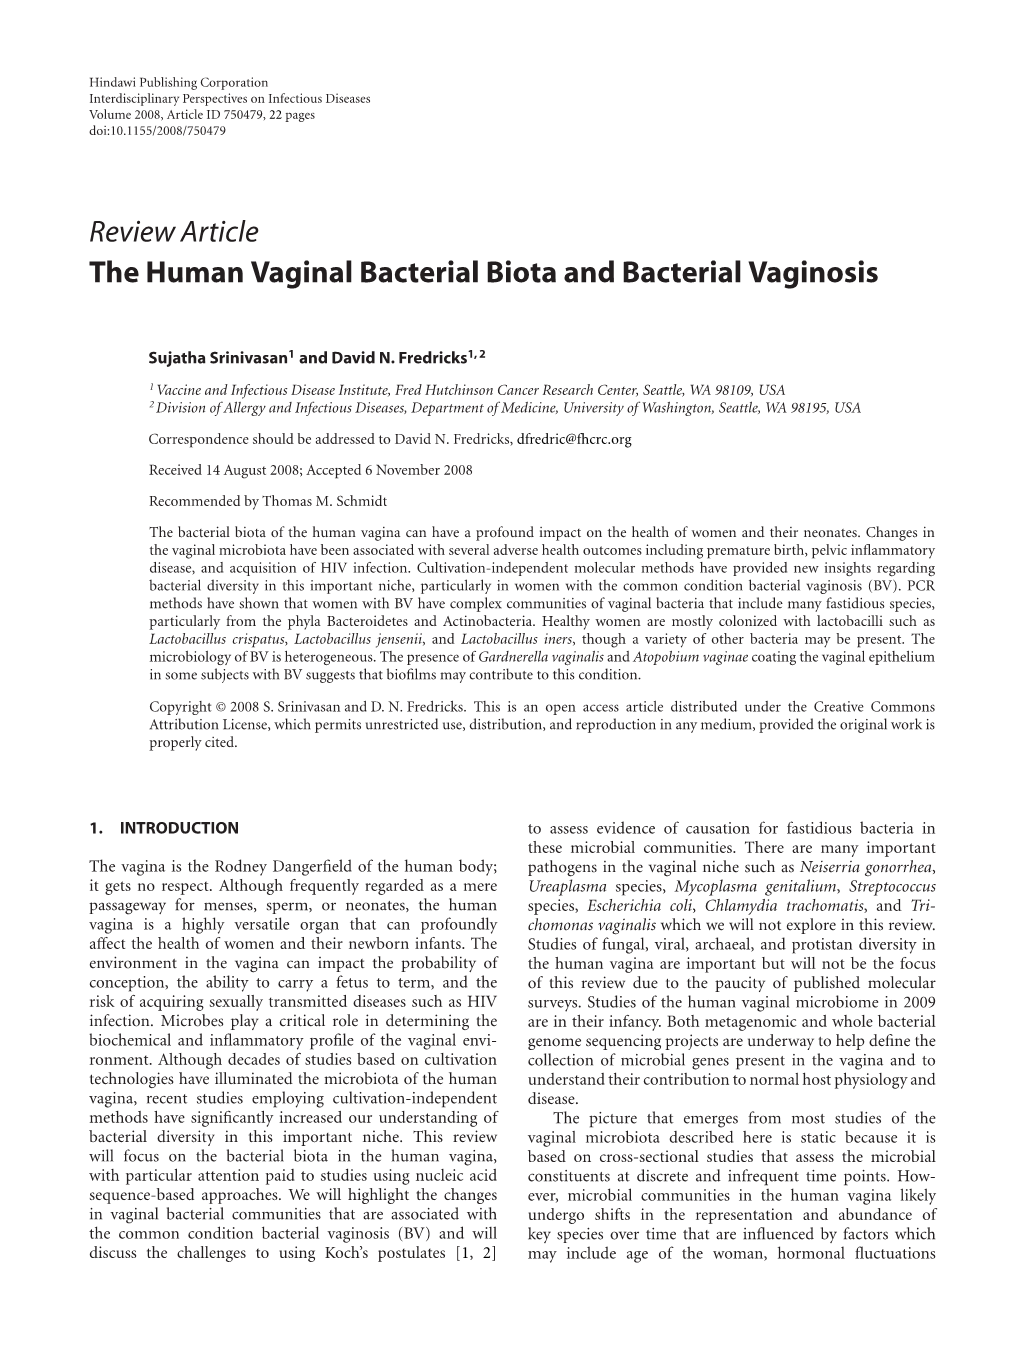 The Human Vaginal Bacterial Biota and Bacterial Vaginosis